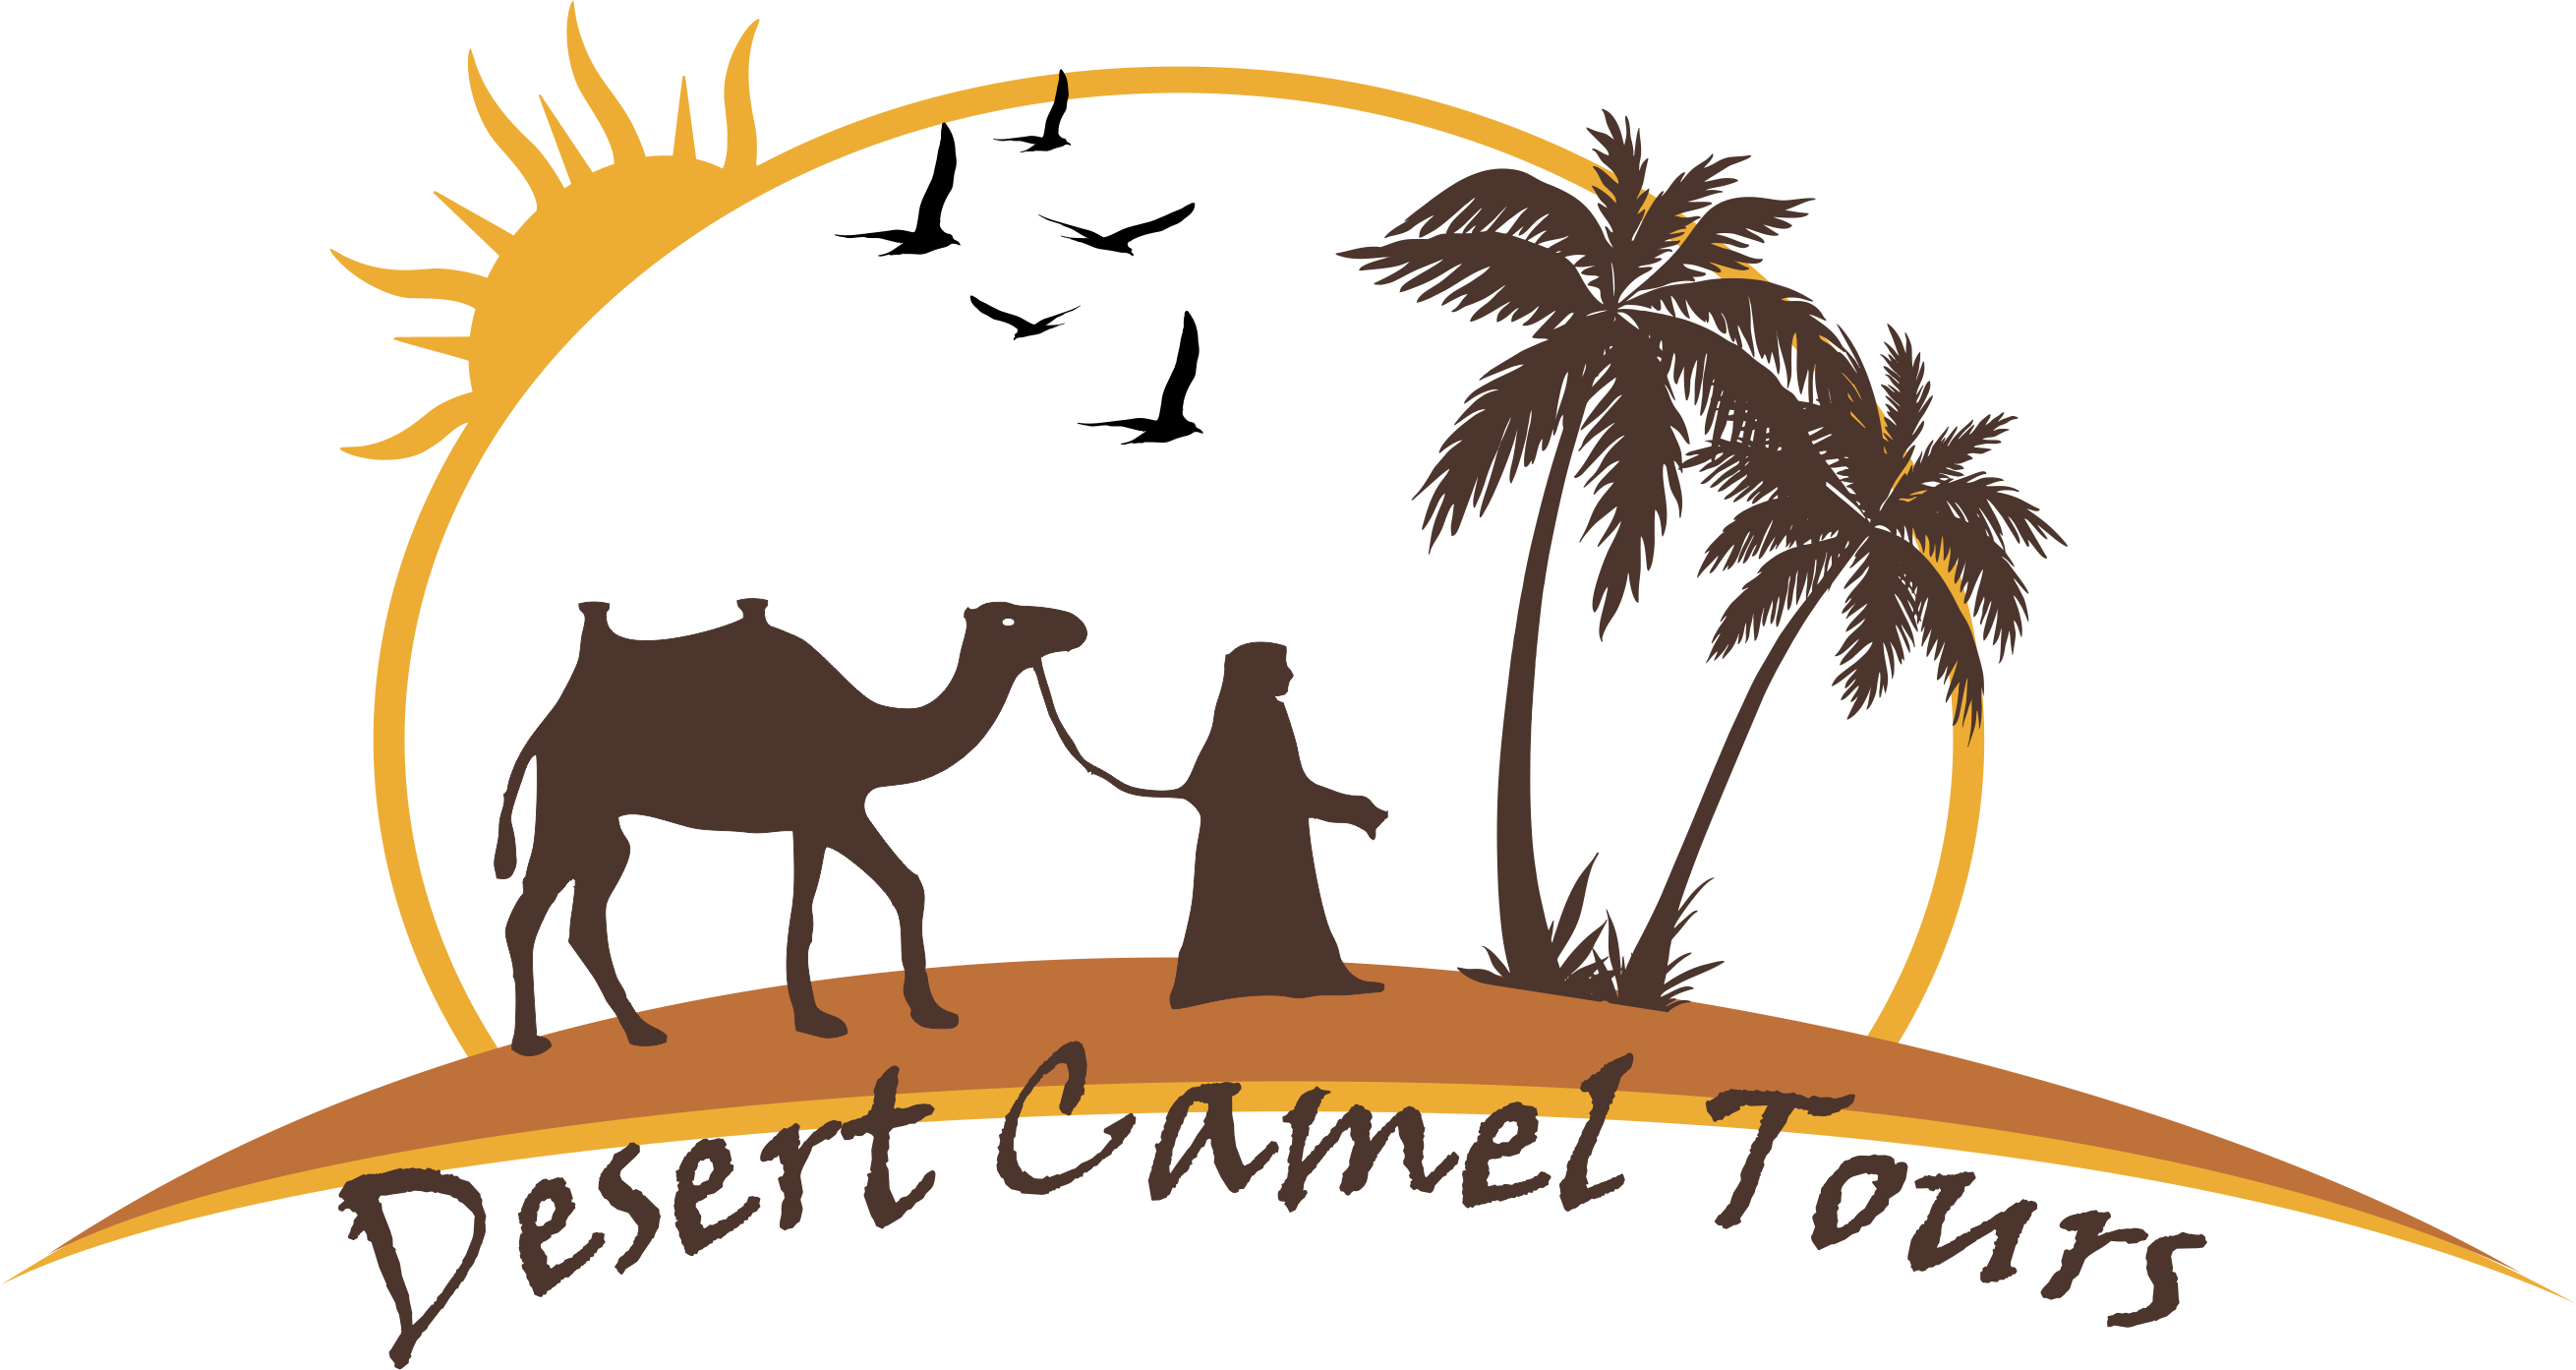 LOGO DESERT CAMEL TOURS